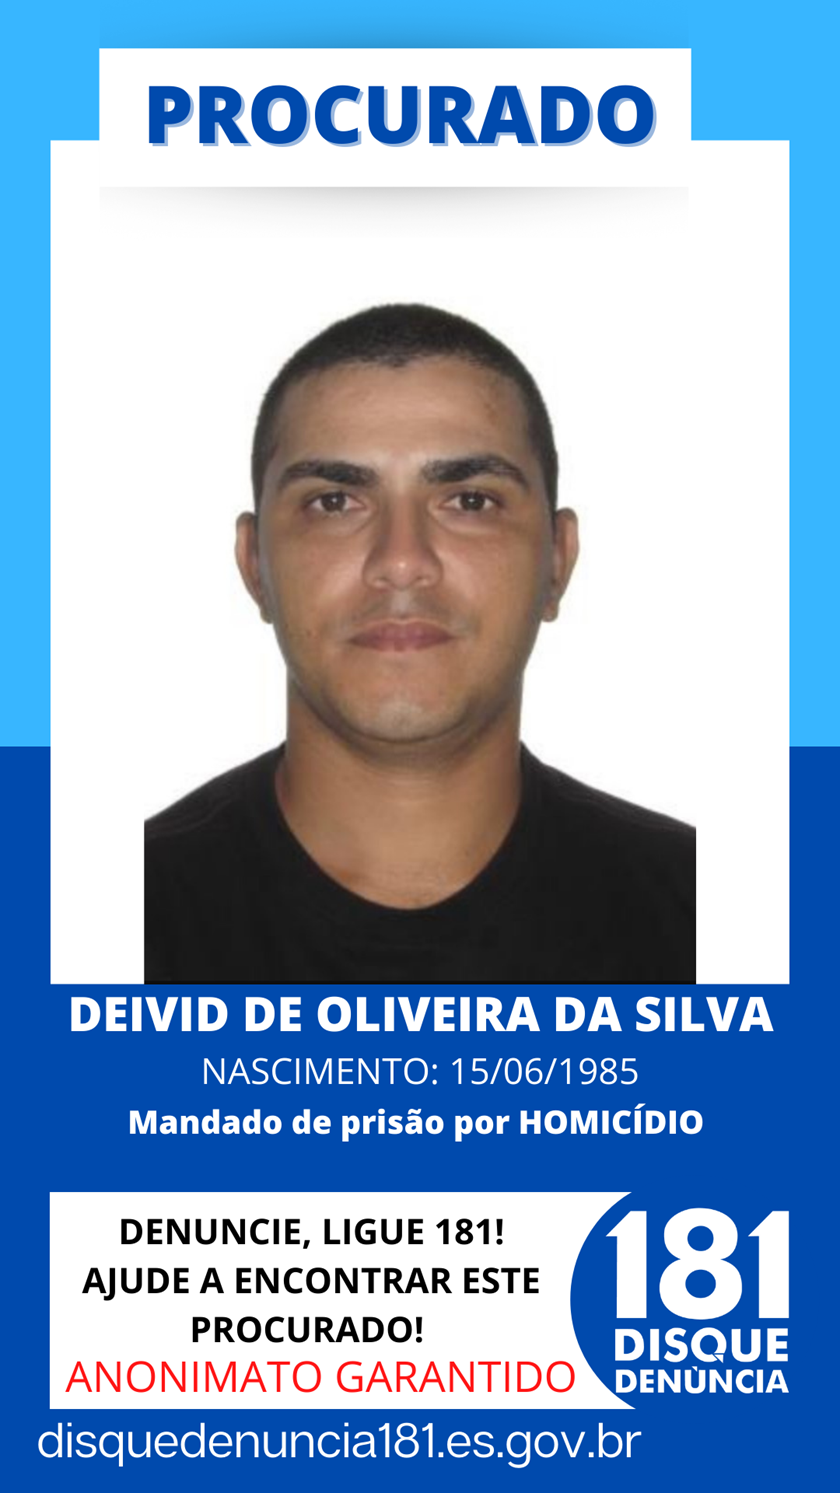 Logomarca - DEIVID DE OLIVEIRA DA SILVA